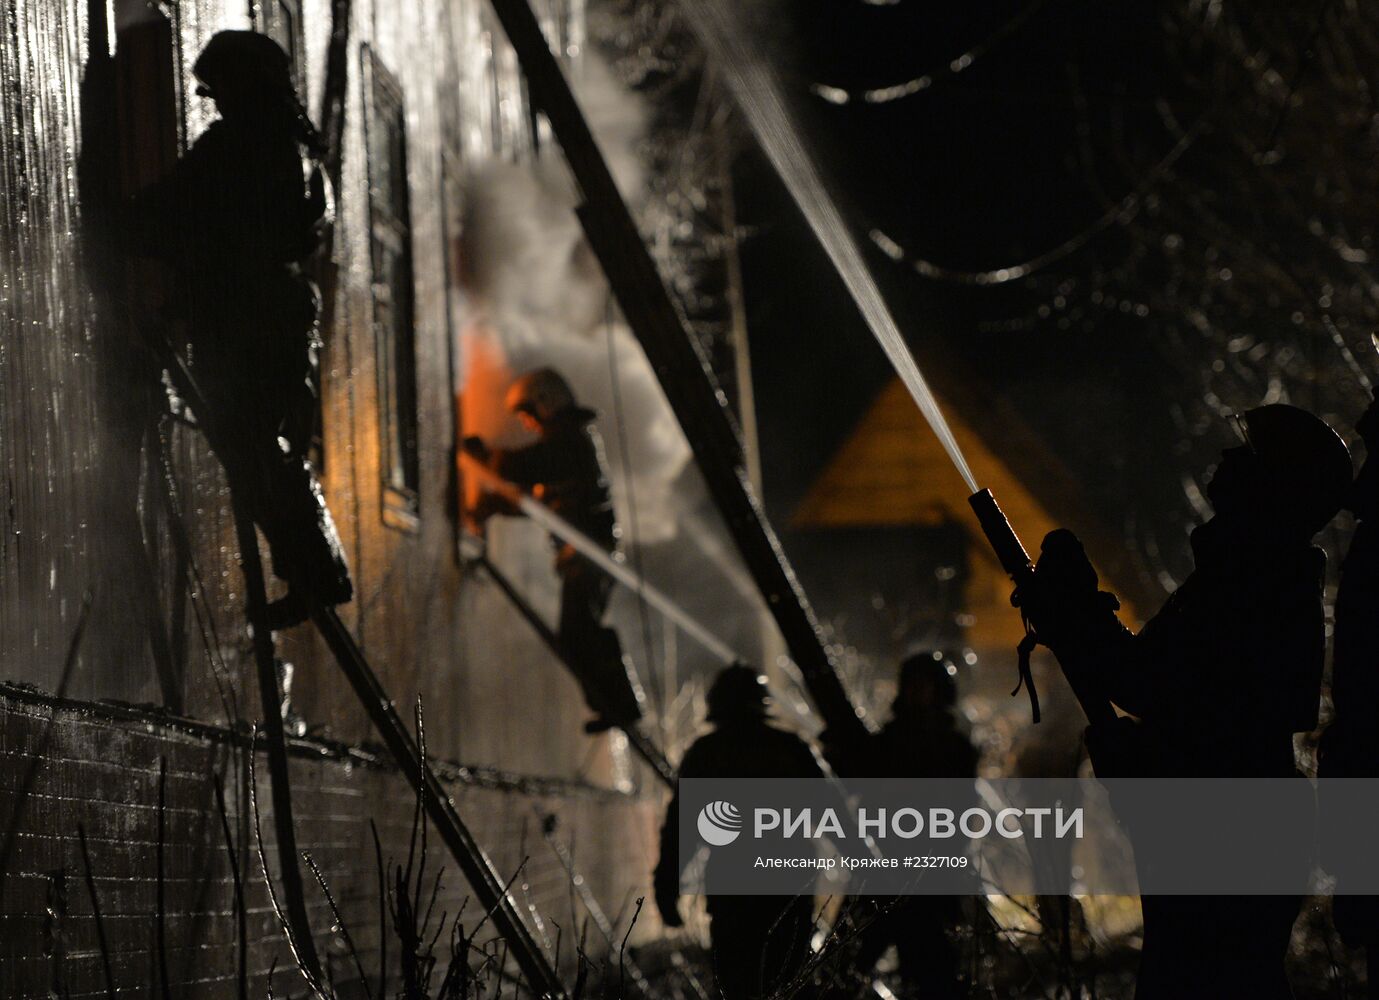 Пожар в двухэтажном деревянном доме в Новосибирске